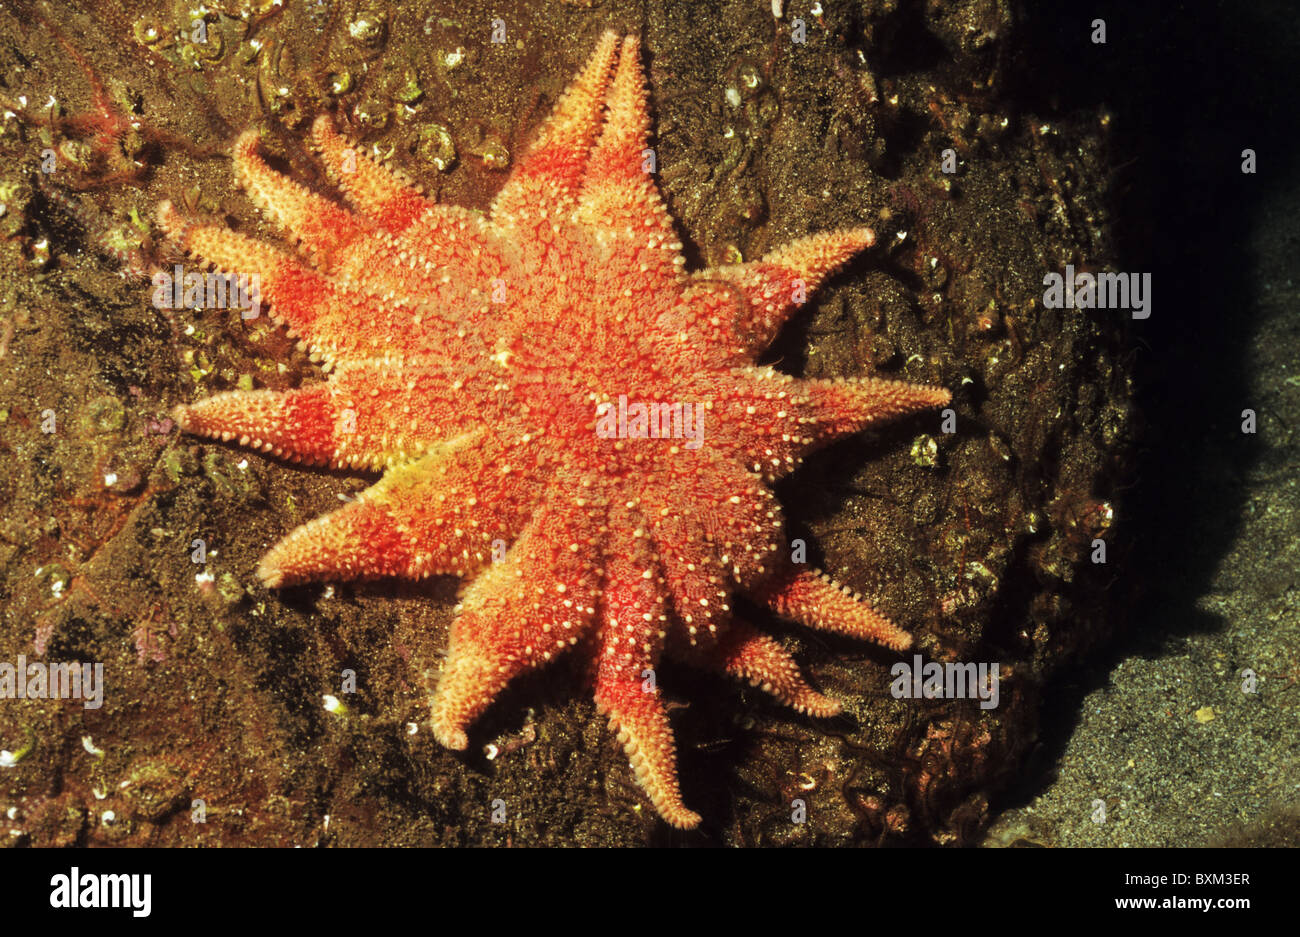 Sunstar commun, étoiles, Fonds sous-marins au large des côtes écossaises. La photographie sous-marine. Plongée sous-marine, St Abbs Ecosse. Banque D'Images